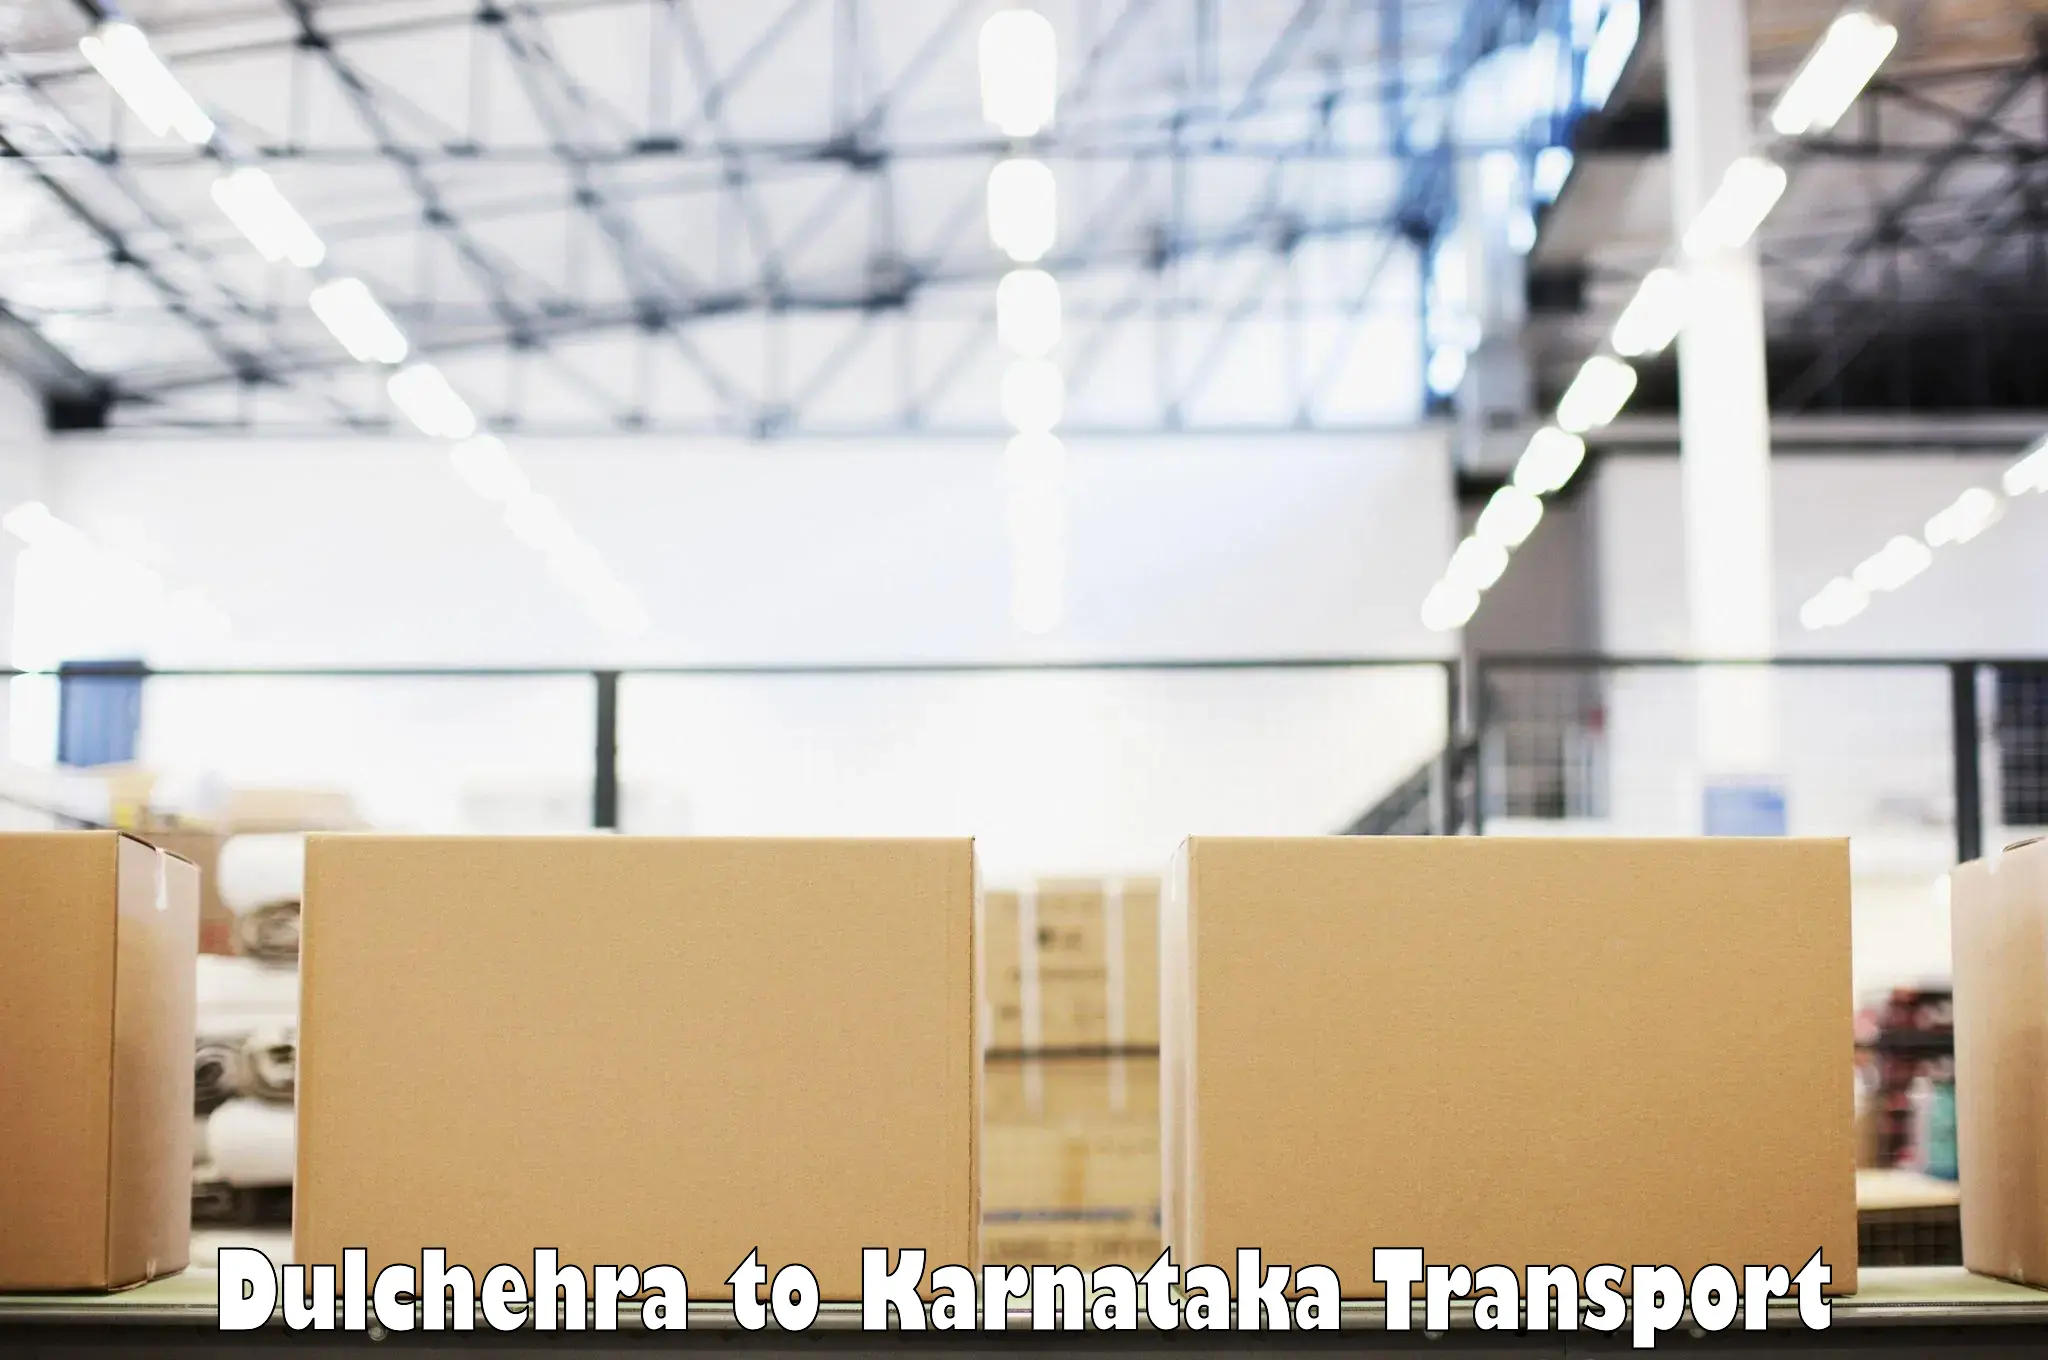 Vehicle transport services Dulchehra to Ramanagara